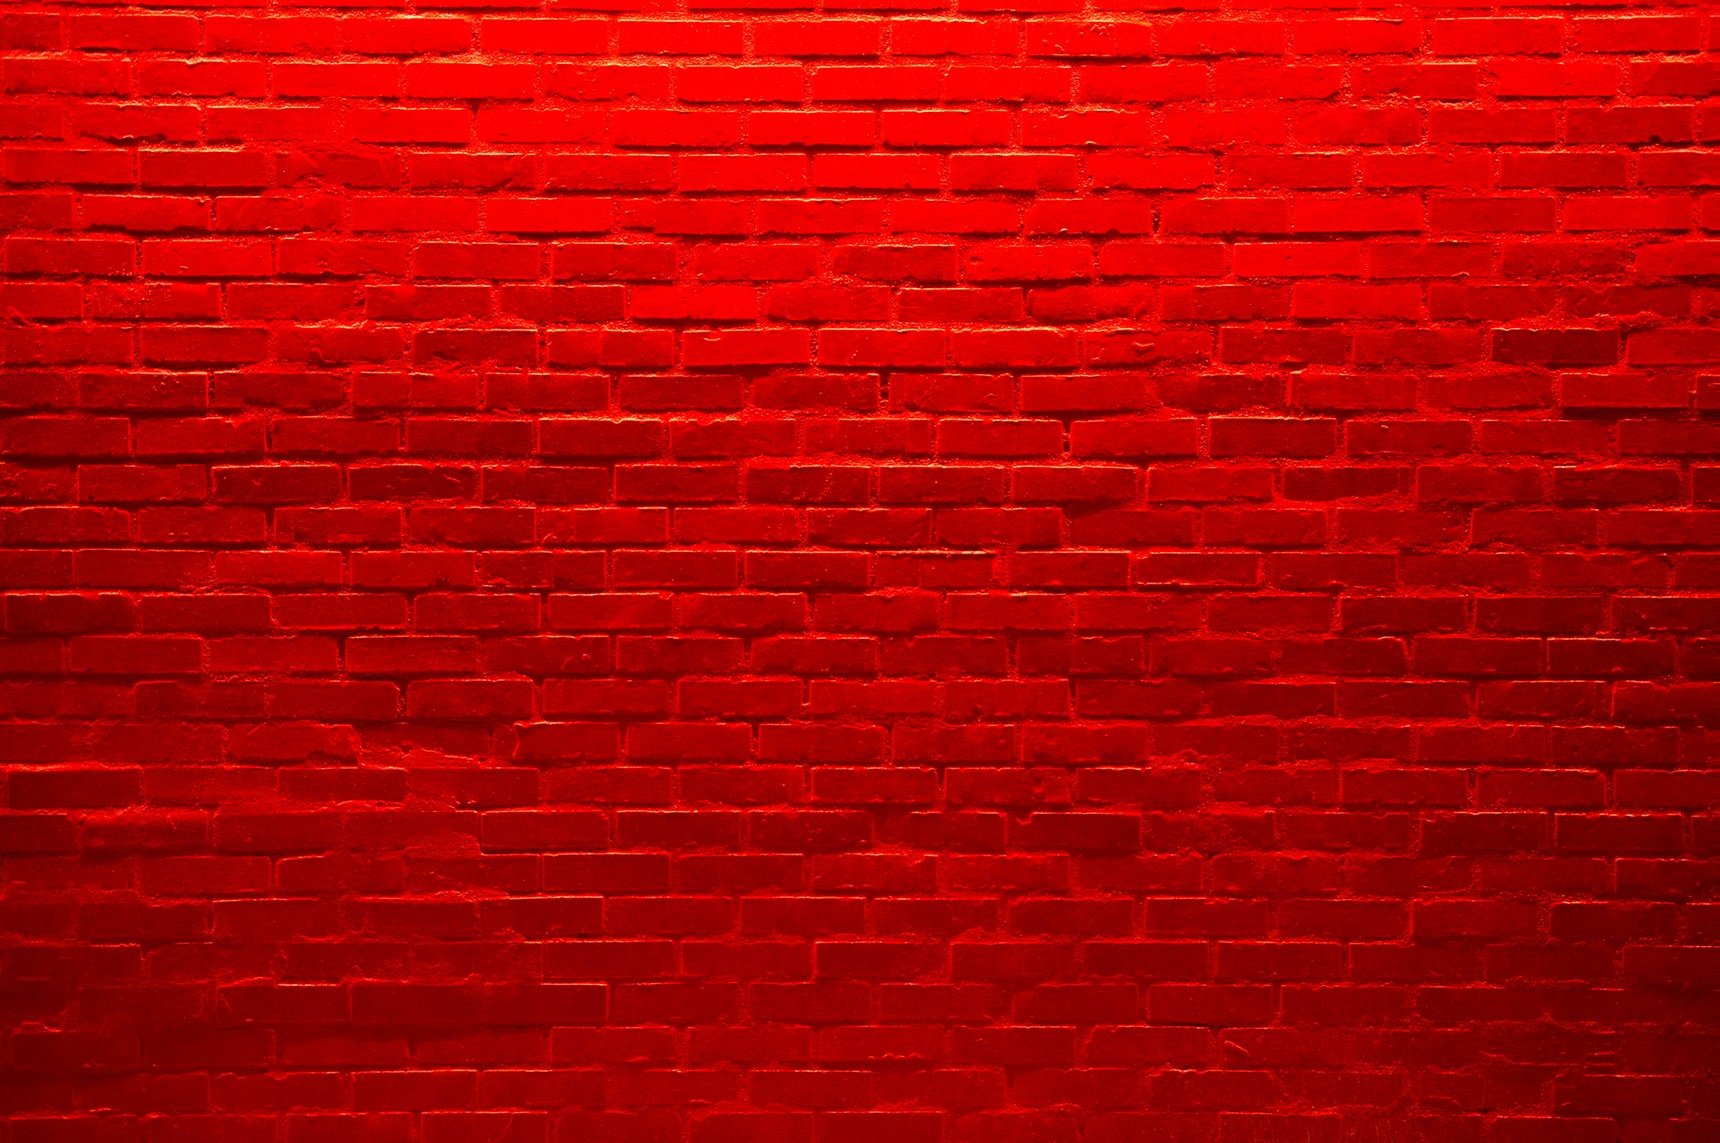 Plan red. Red Brick (красный кирпич) сайдинг. Красная стена. Красная кирпичная стена. Кирпичный фон.